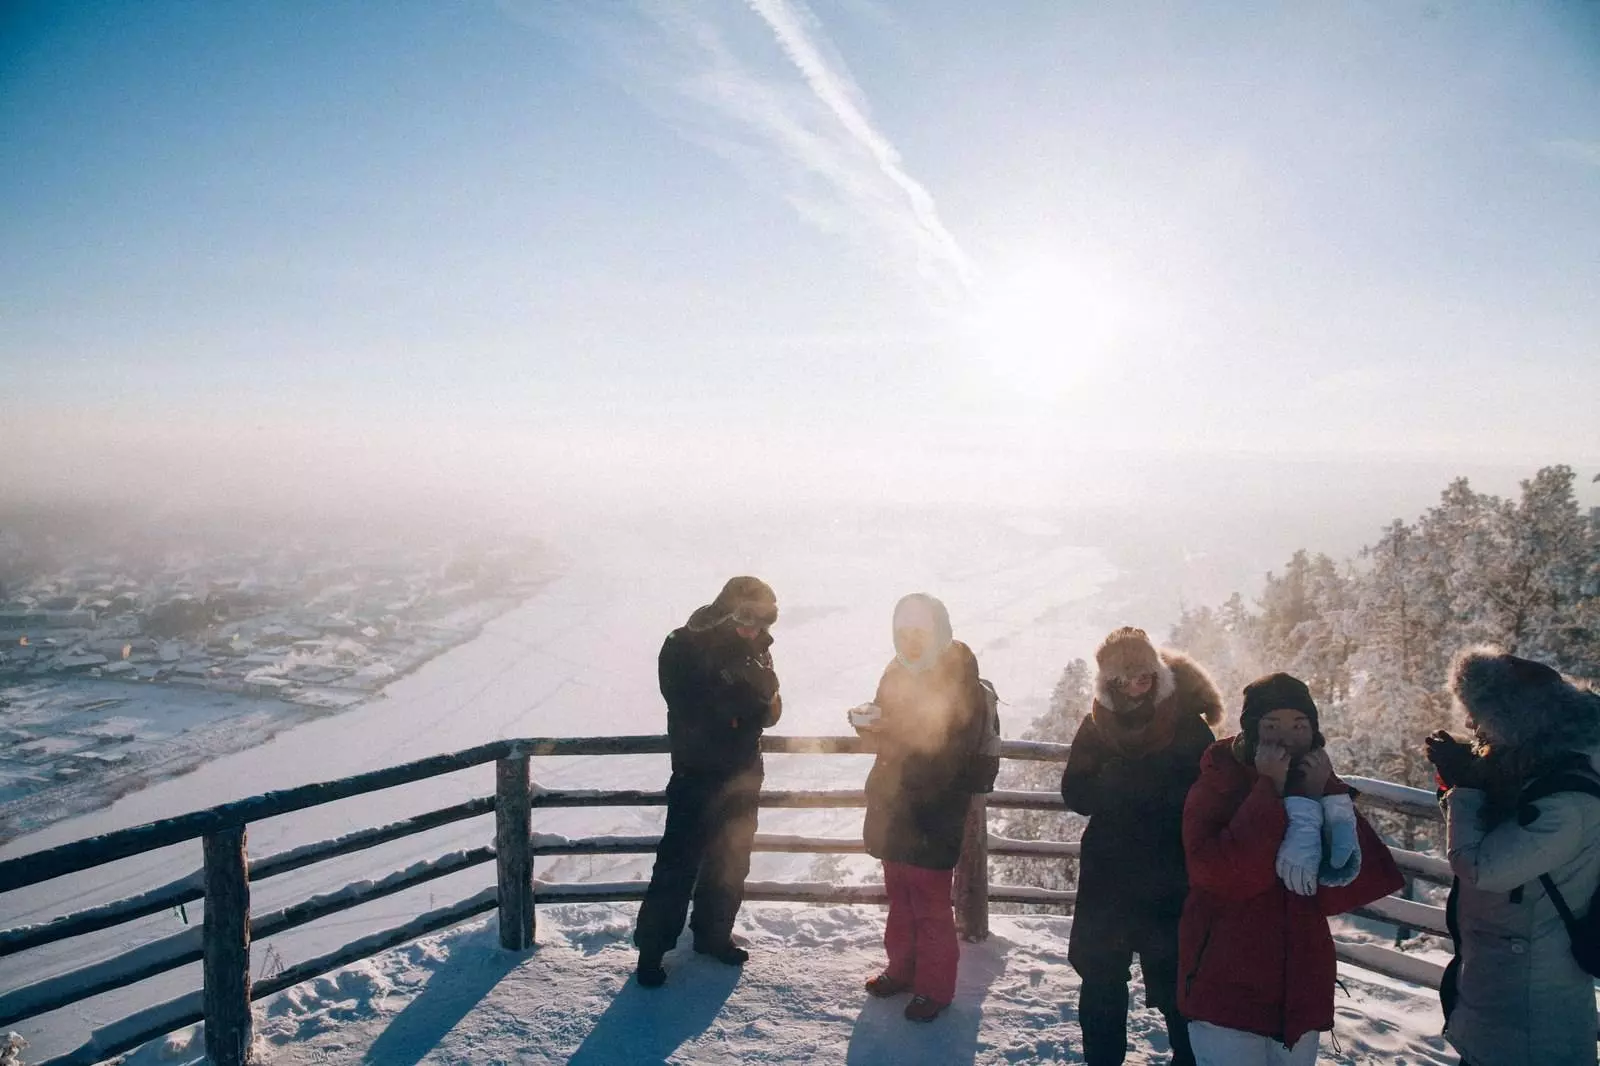 Якутия: как устроена жизнь на полюсе холода